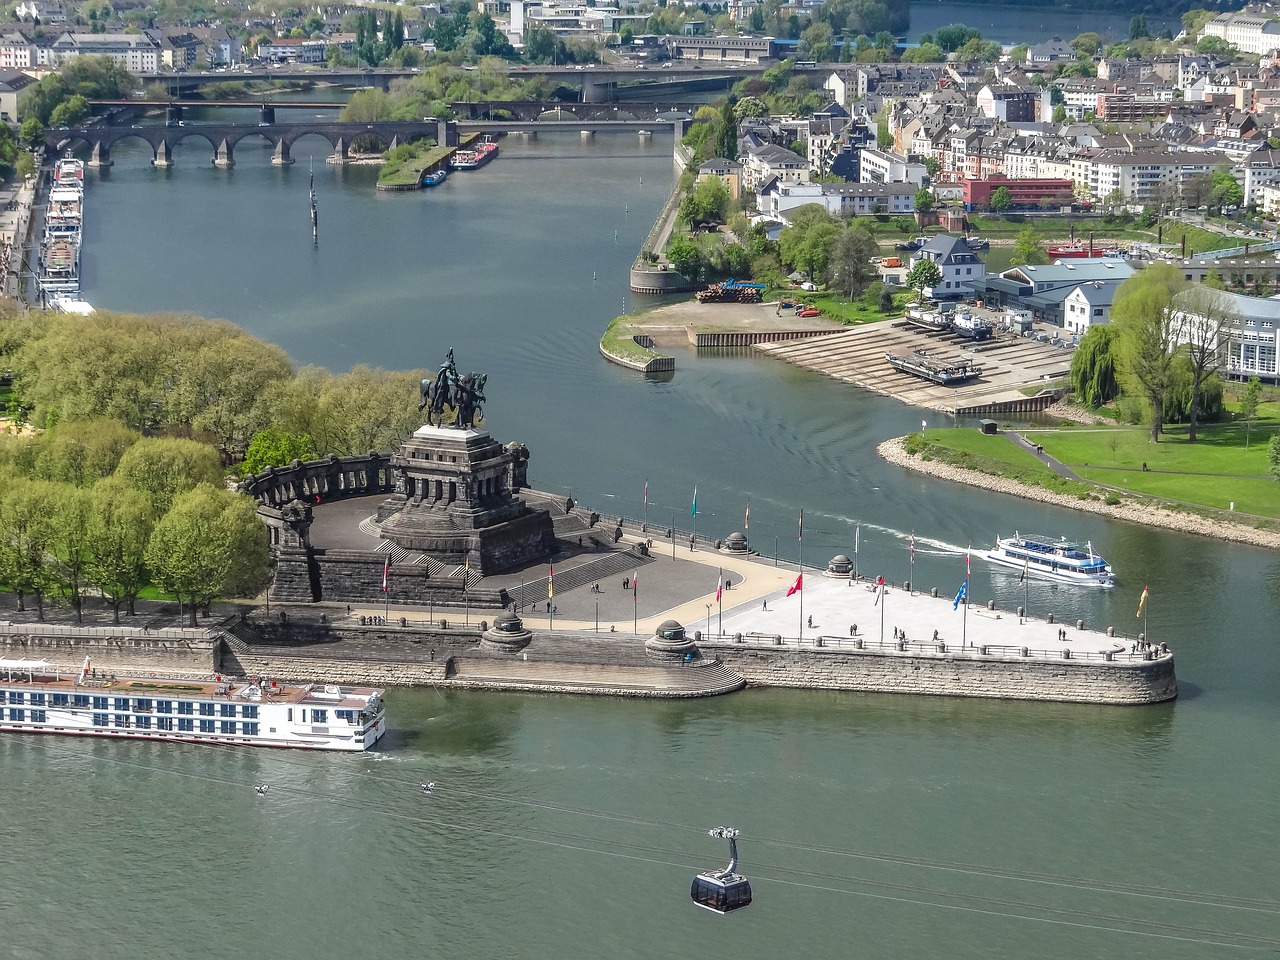 Ausflugziele in Koblenz – Sehenswürdigkeiten, die man gesehen haben sollte!